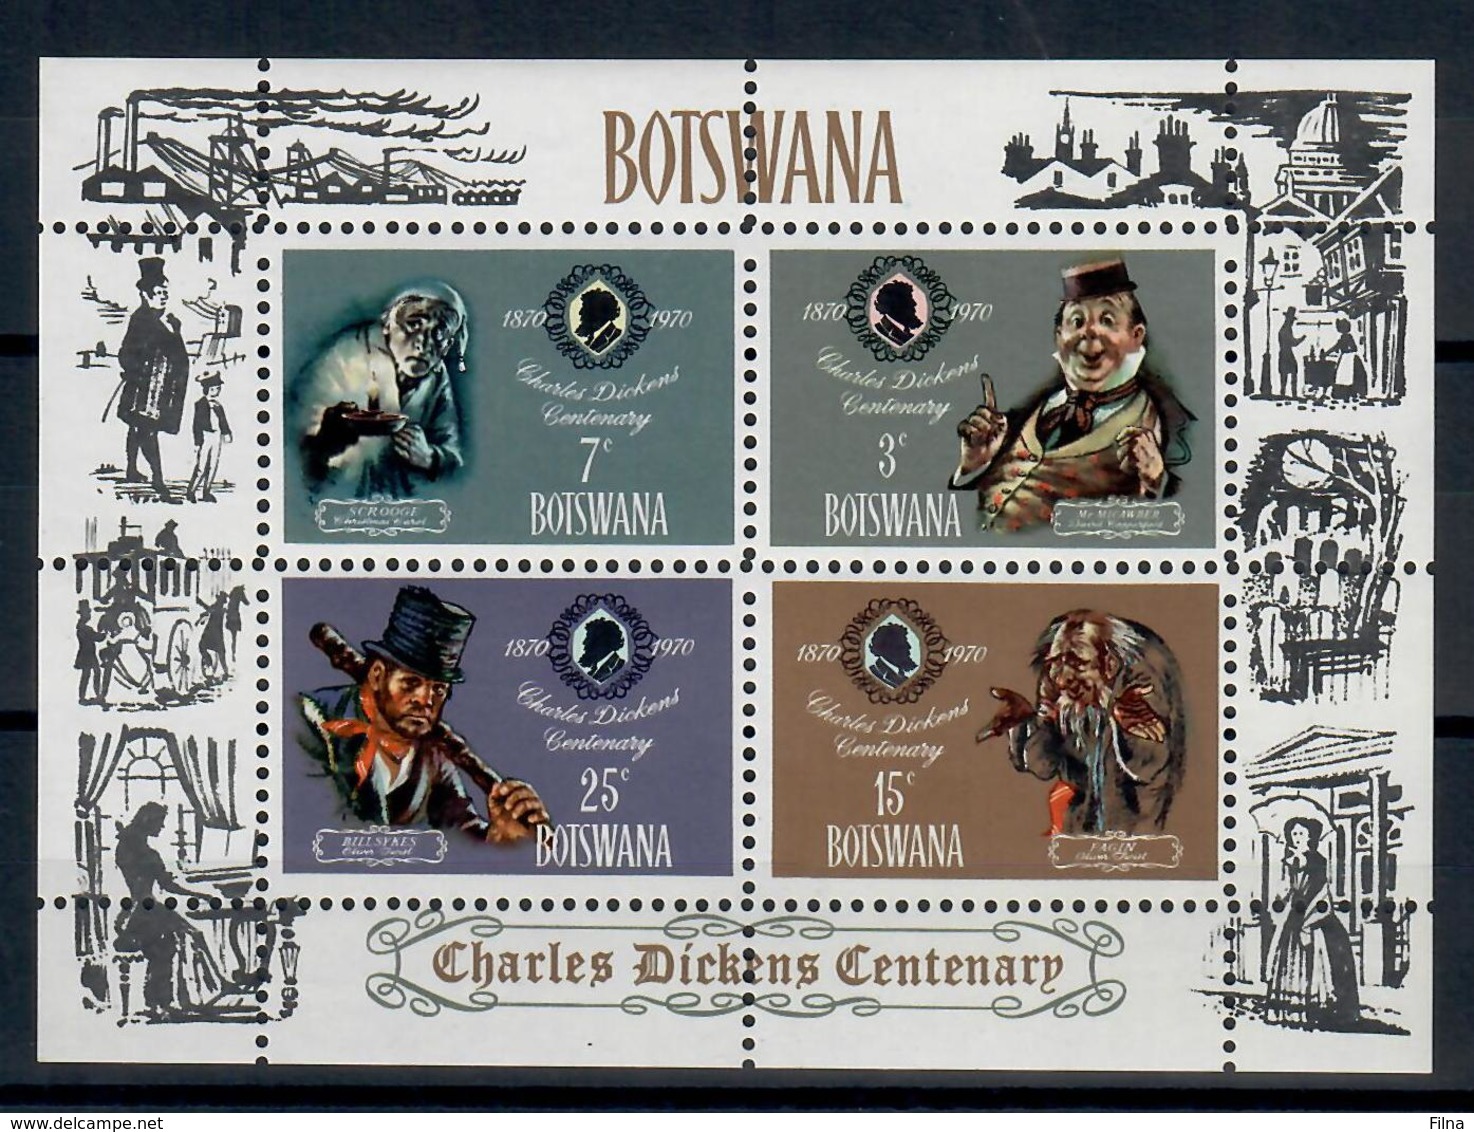 BOTSWANA 1970 - CHARLES DICKENS - FGL - MNH ** - Botswana (1966-...)